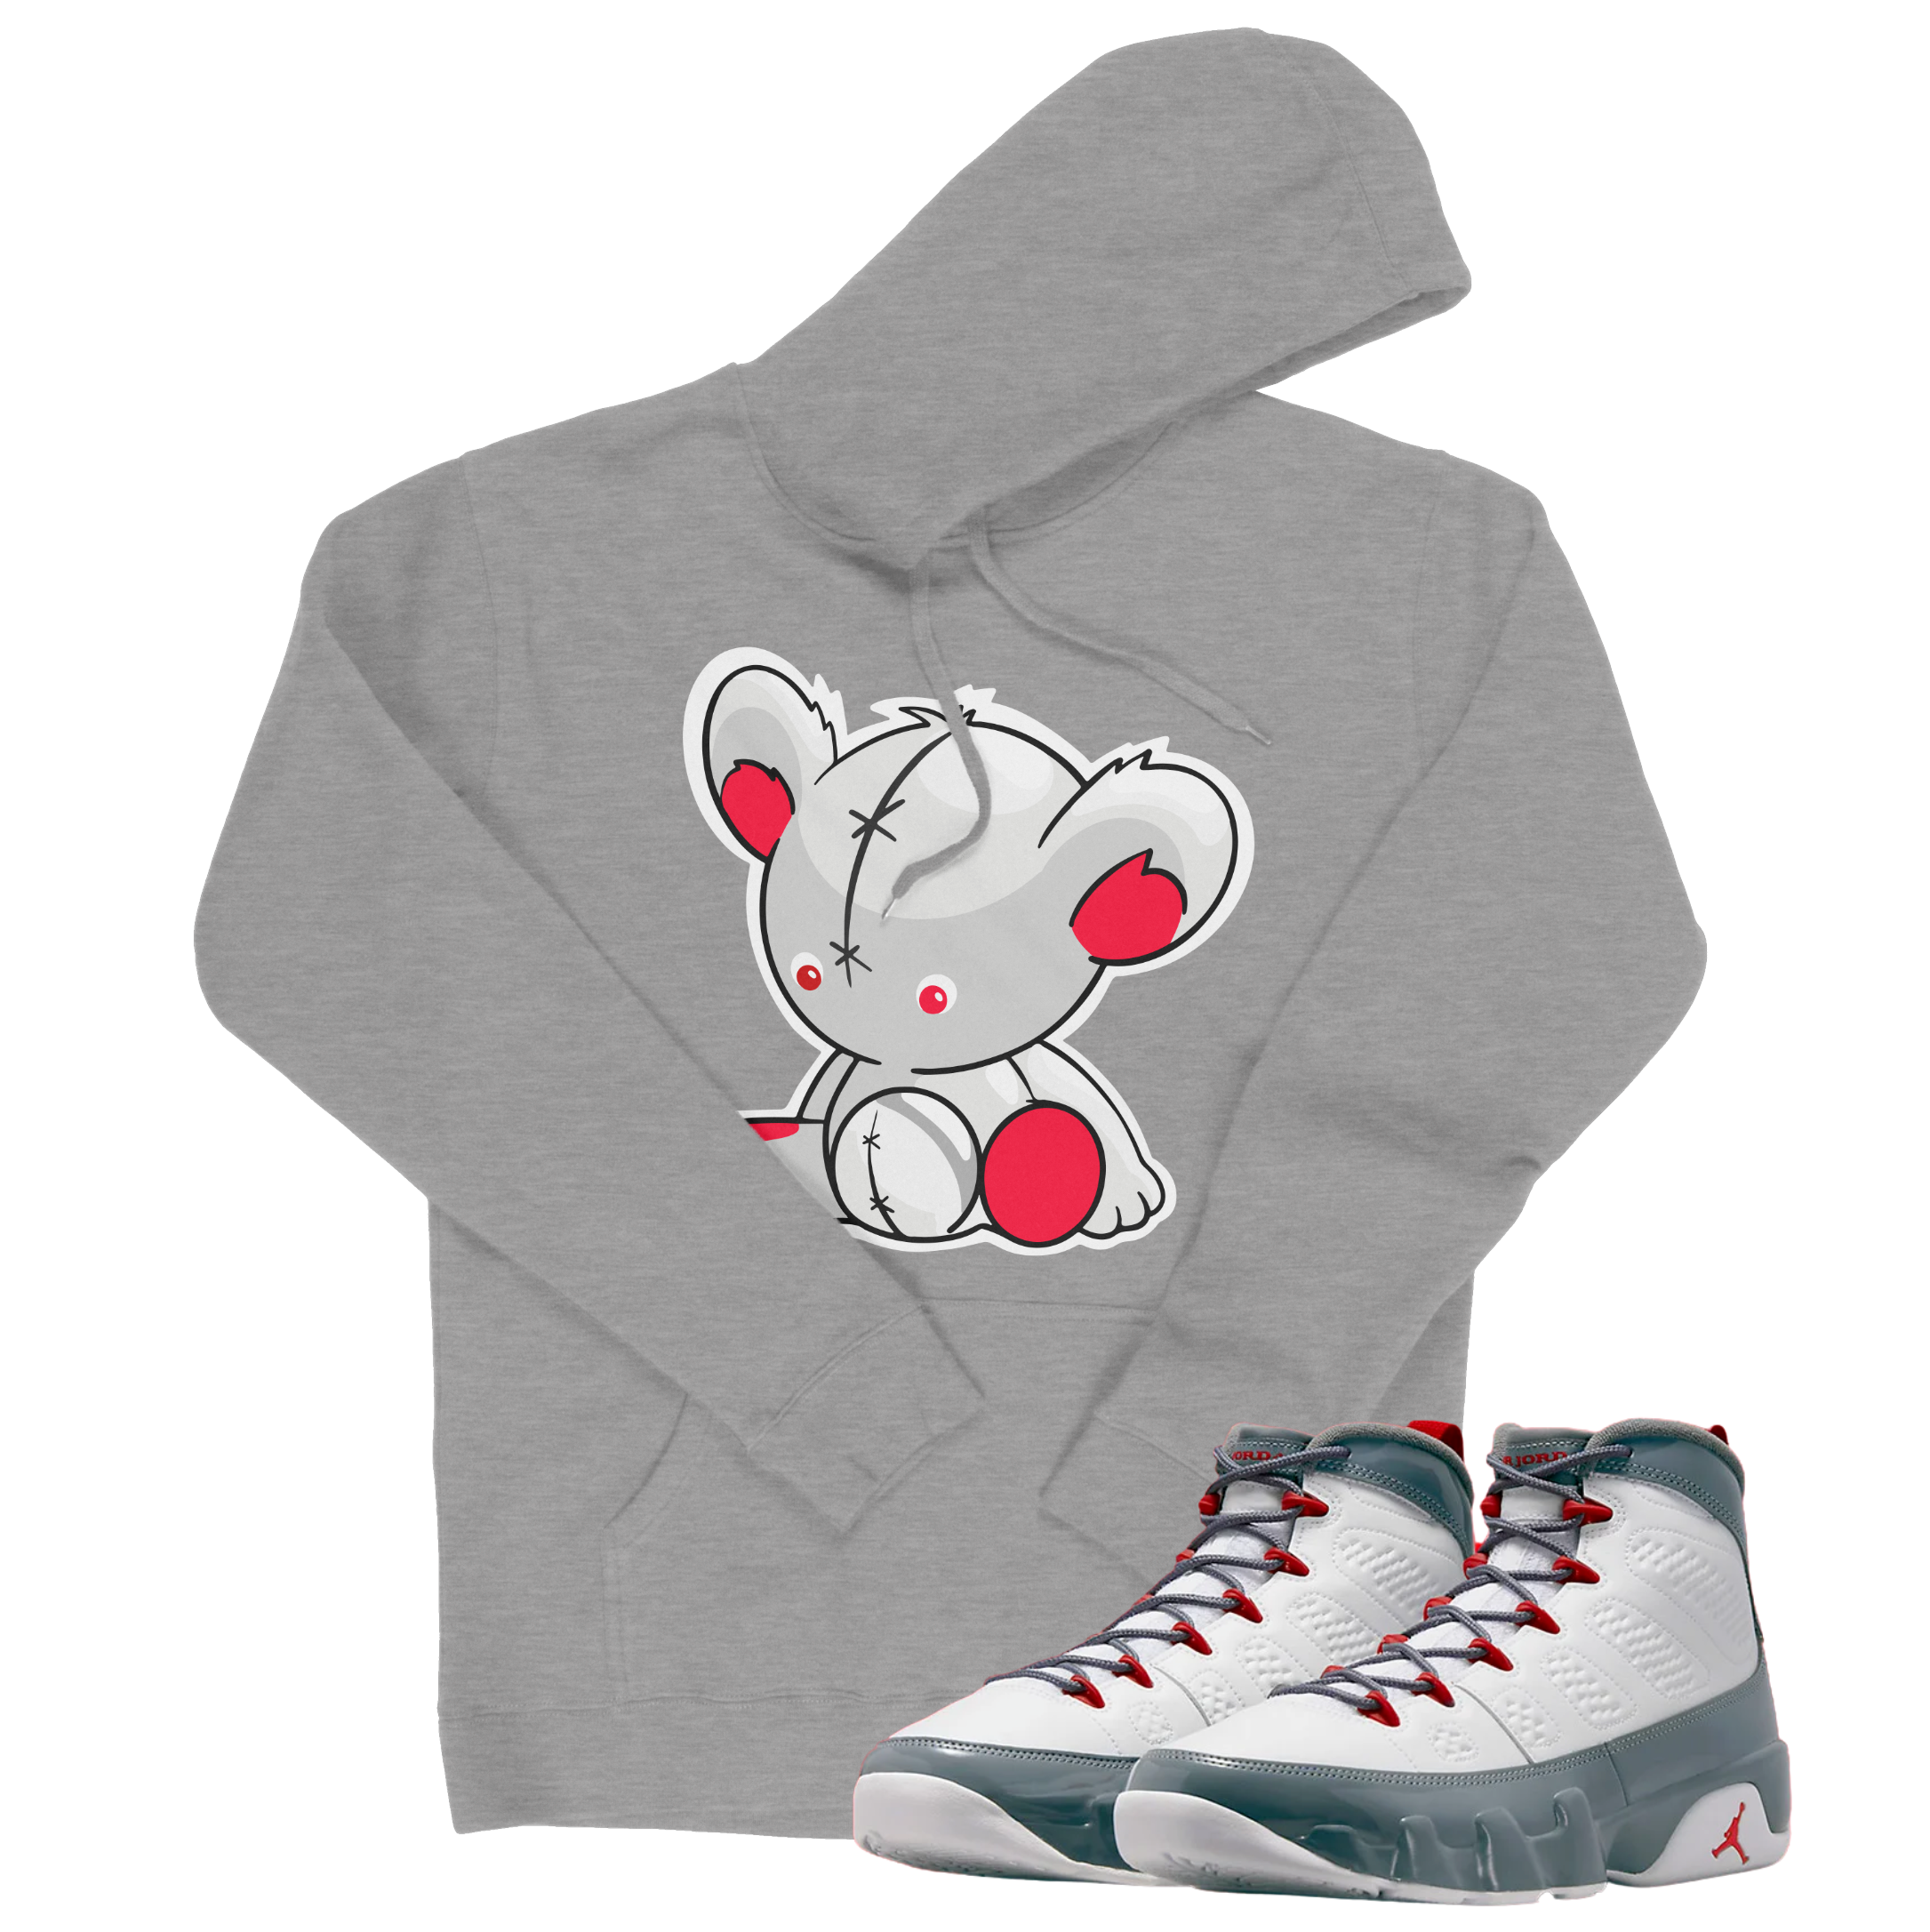 Air Jordan 9 Fire Red I Bear Hoodie | Air Jordan 9 Fire Red | Sneaker Match | Jordan Matching Outfits